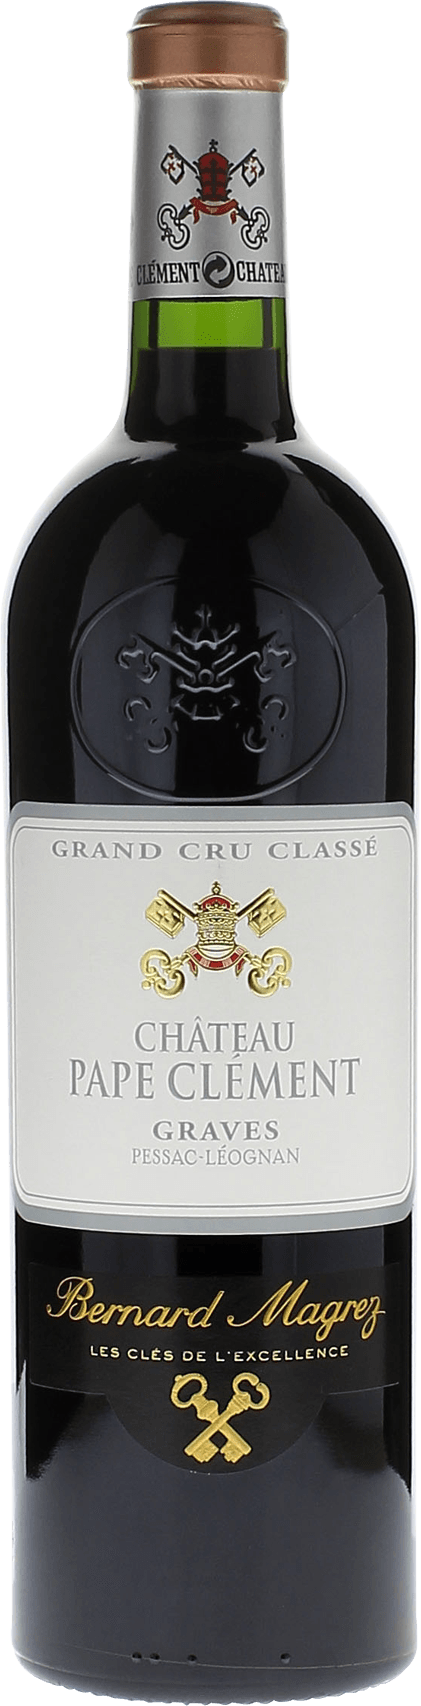 Pape clement rouge 2016 Grand Cru Class Graves, Bordeaux rouge